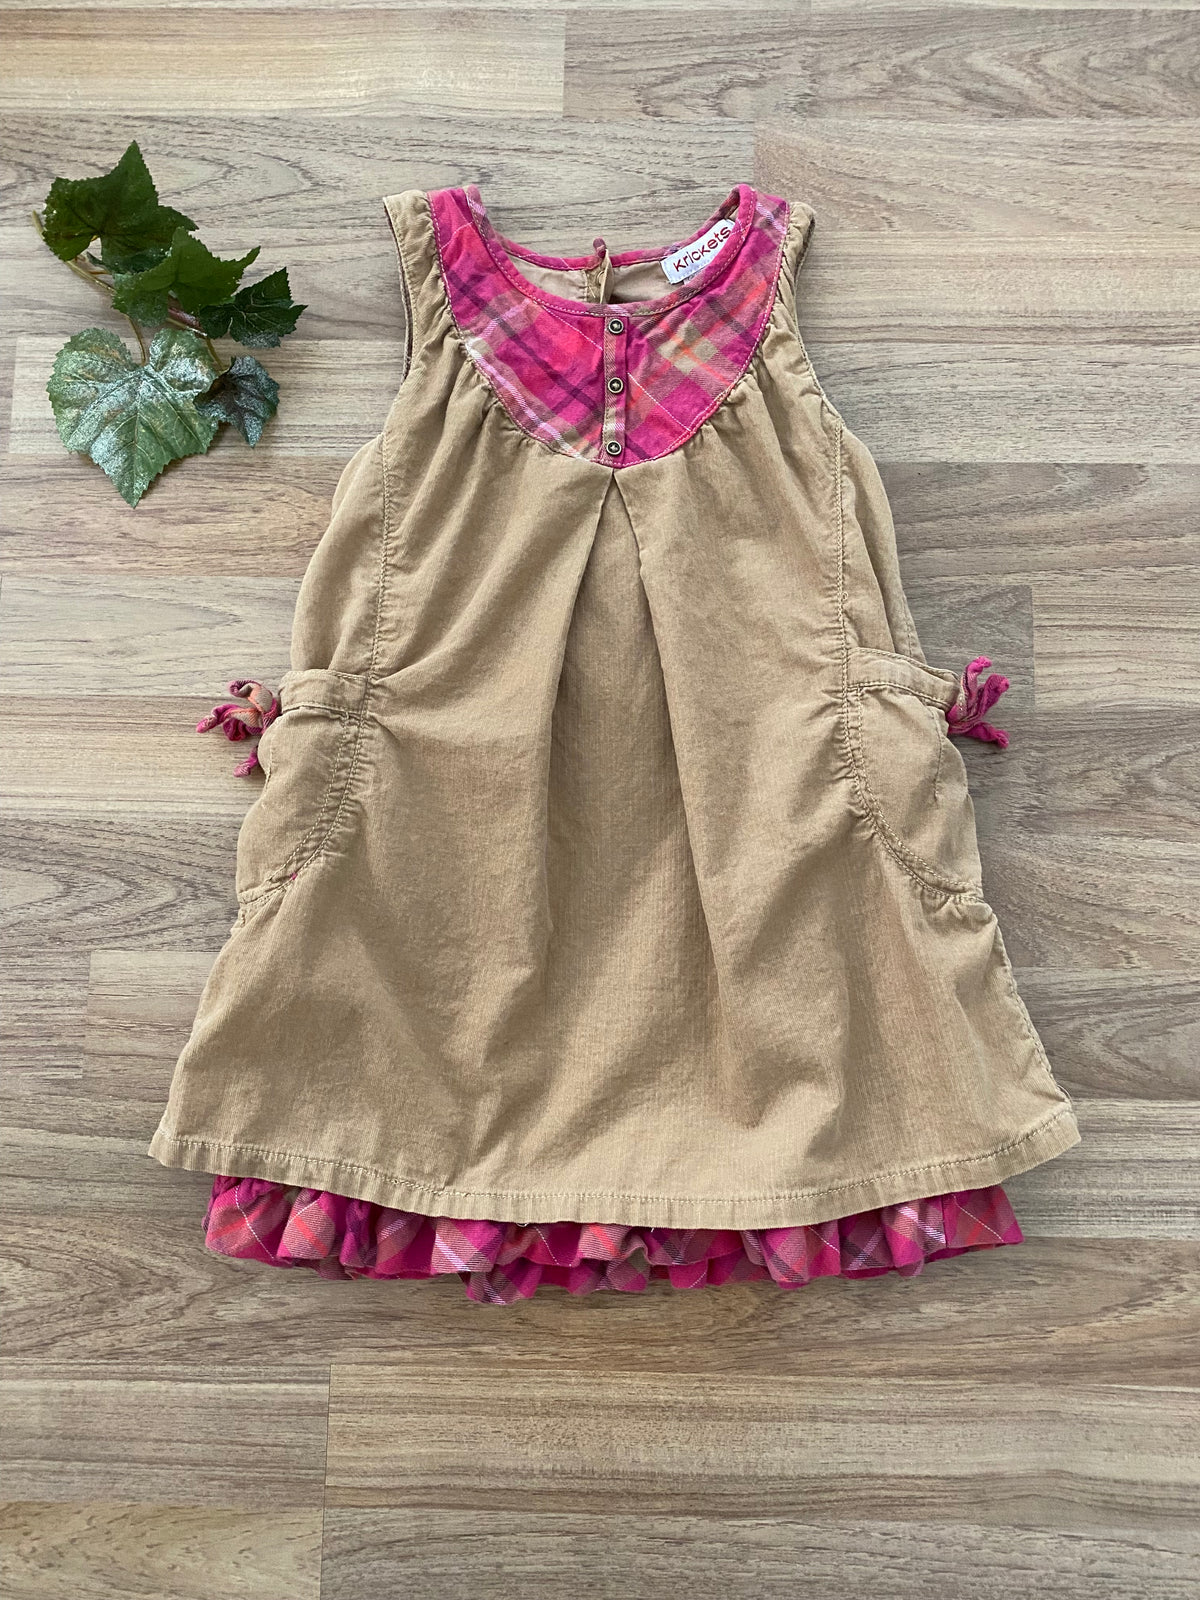 Dress (Girls Size 3X-4)